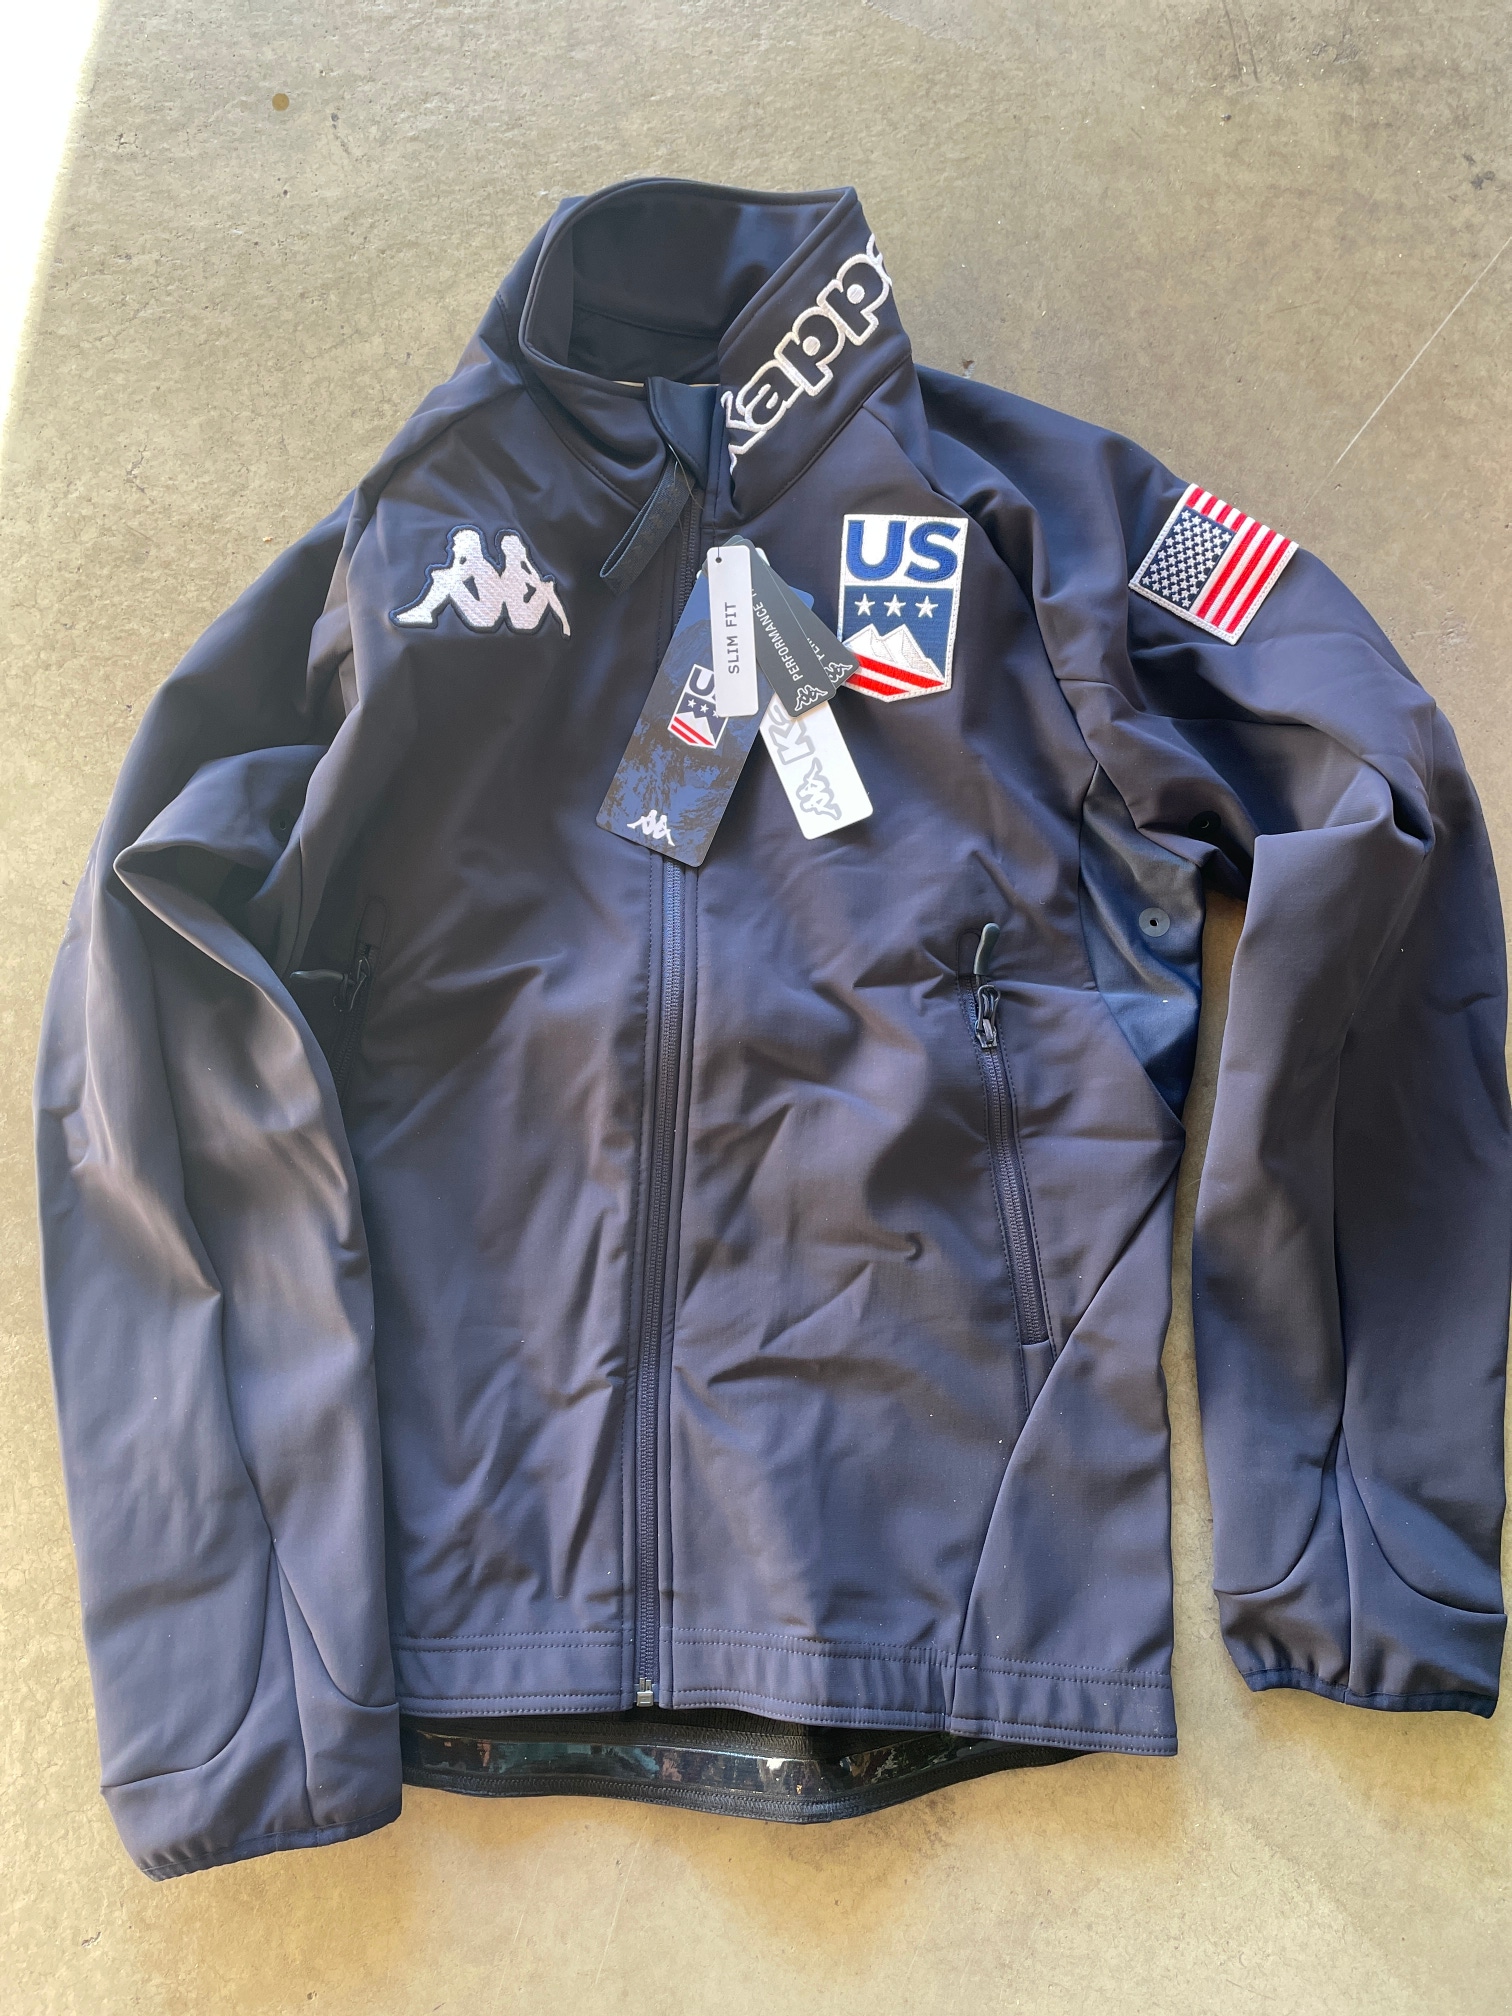 New Kappa US Ski Team Soft Shell Jacket L